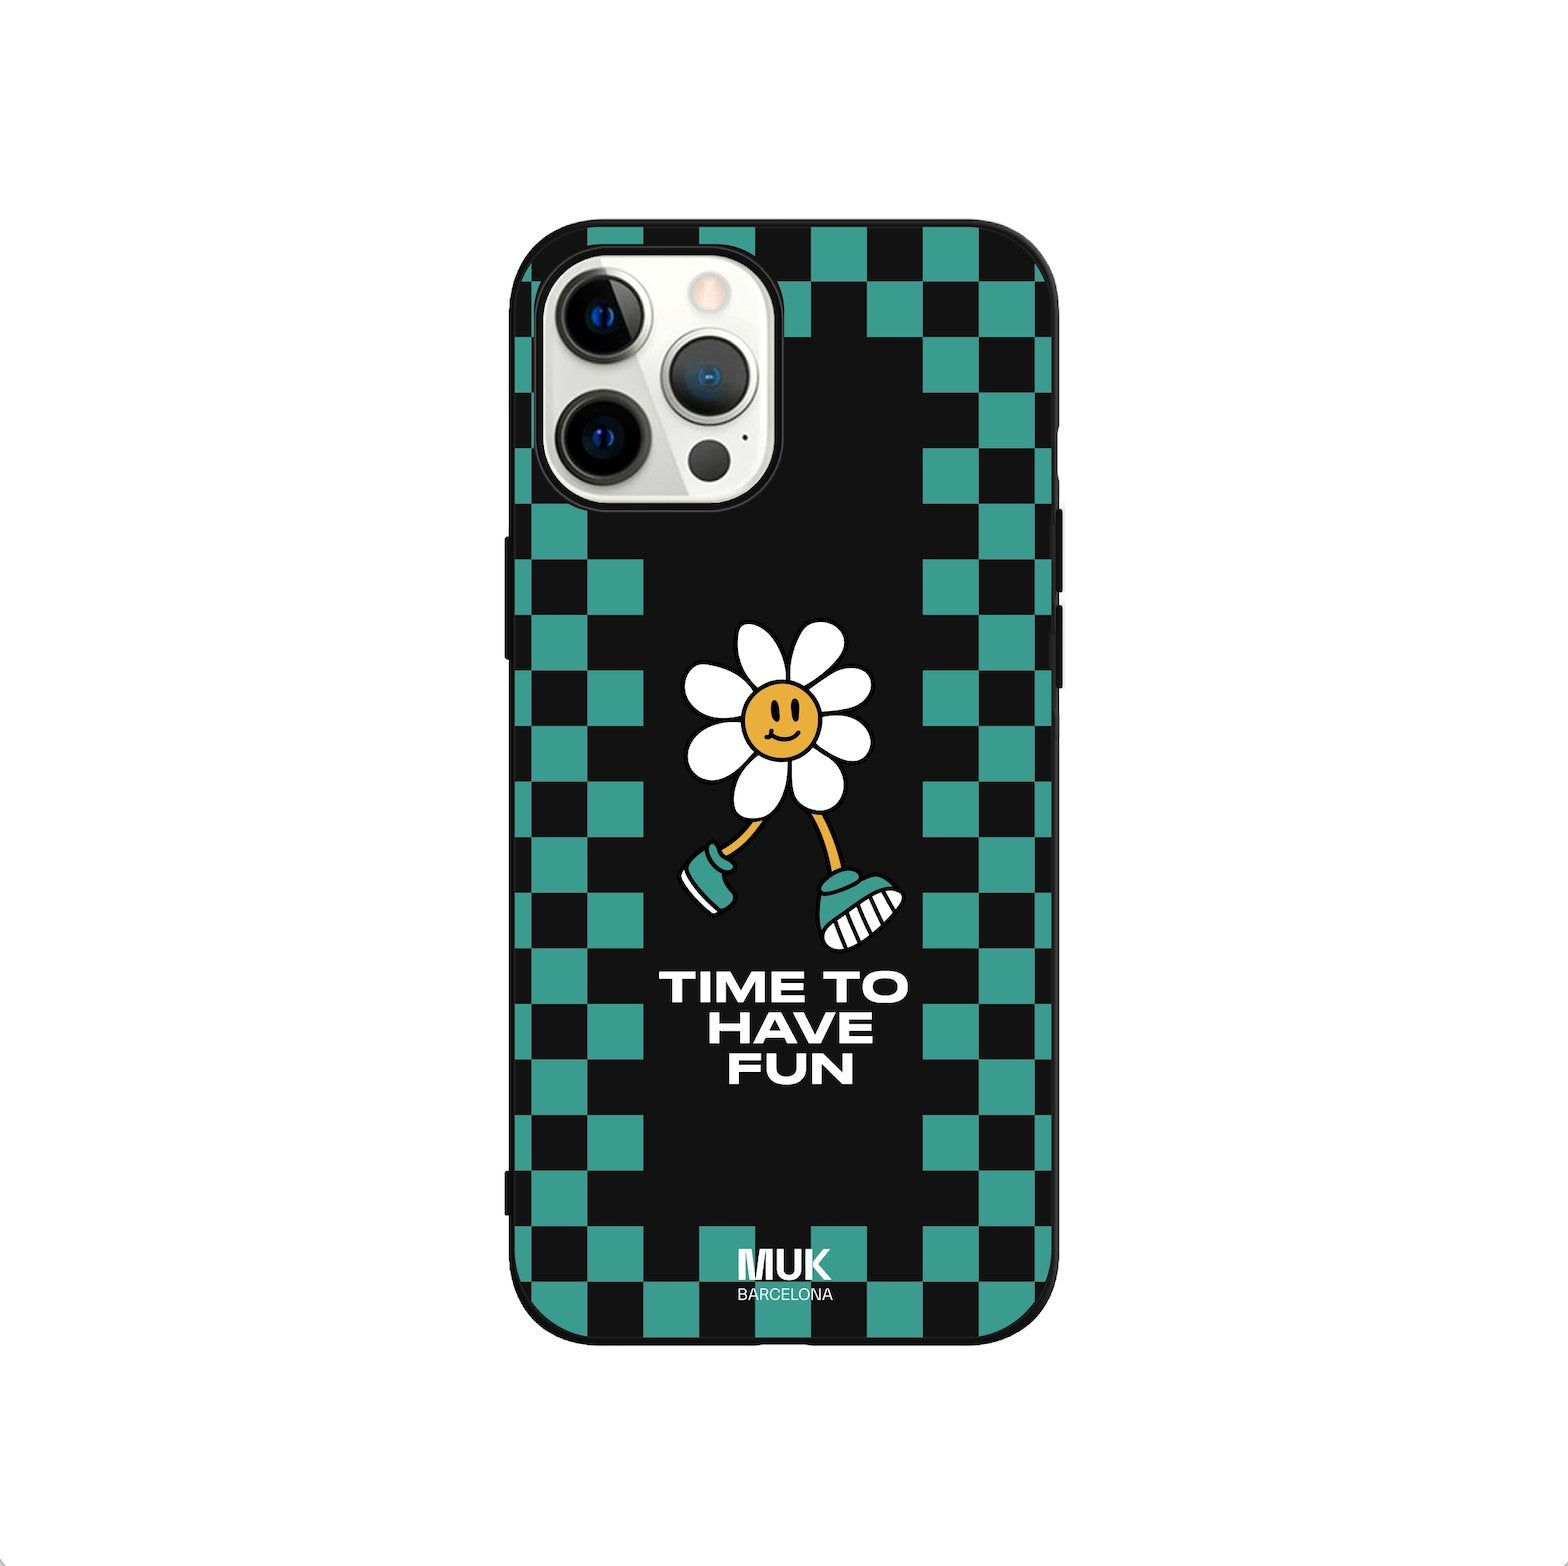 Funda de móvil TPU negra con estampado de cuadros en color lagoon y diseño de margarita y frase "time to have fun" en color blanco.
